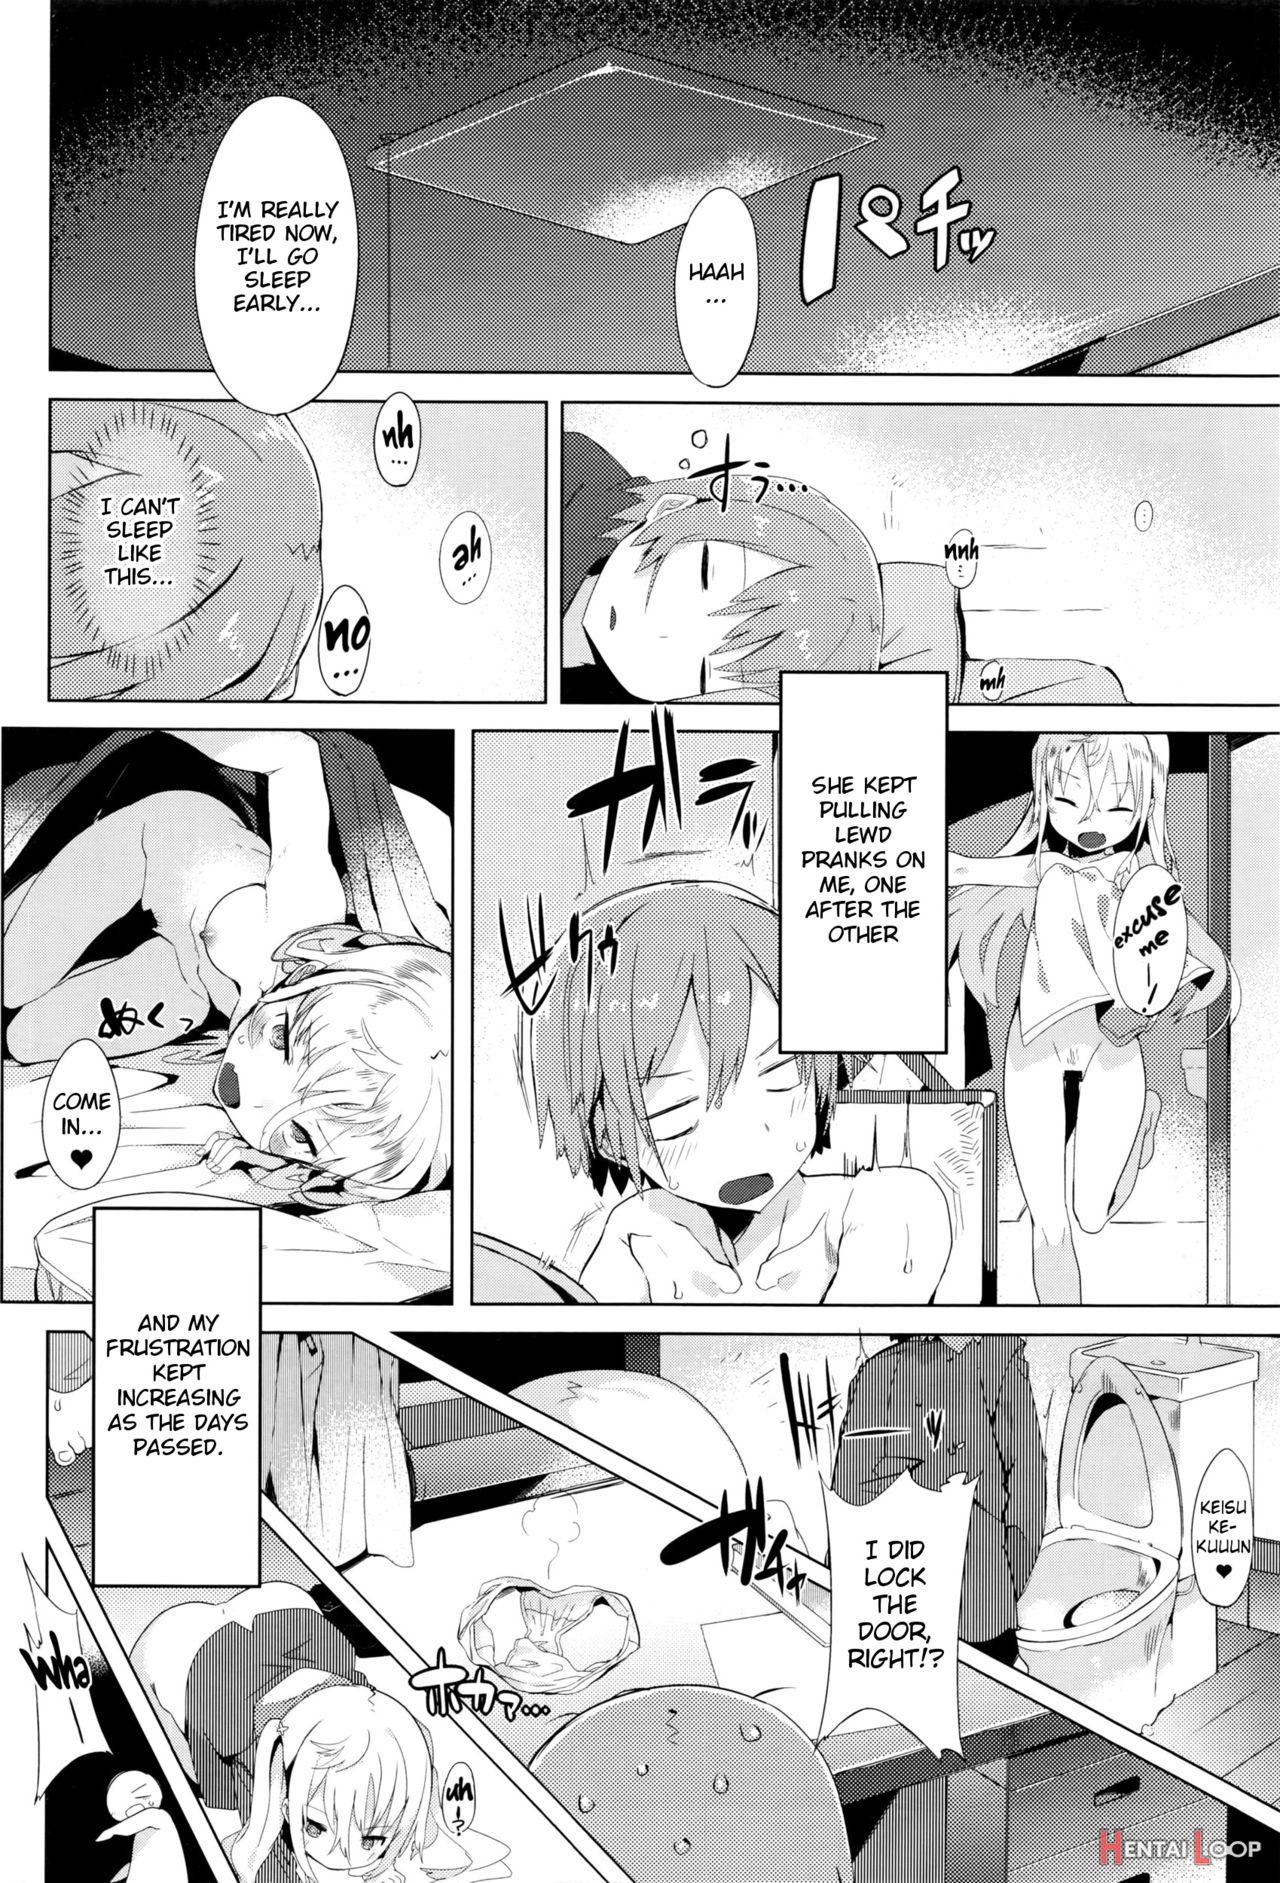 Keisukekunchi No Stalker page 6